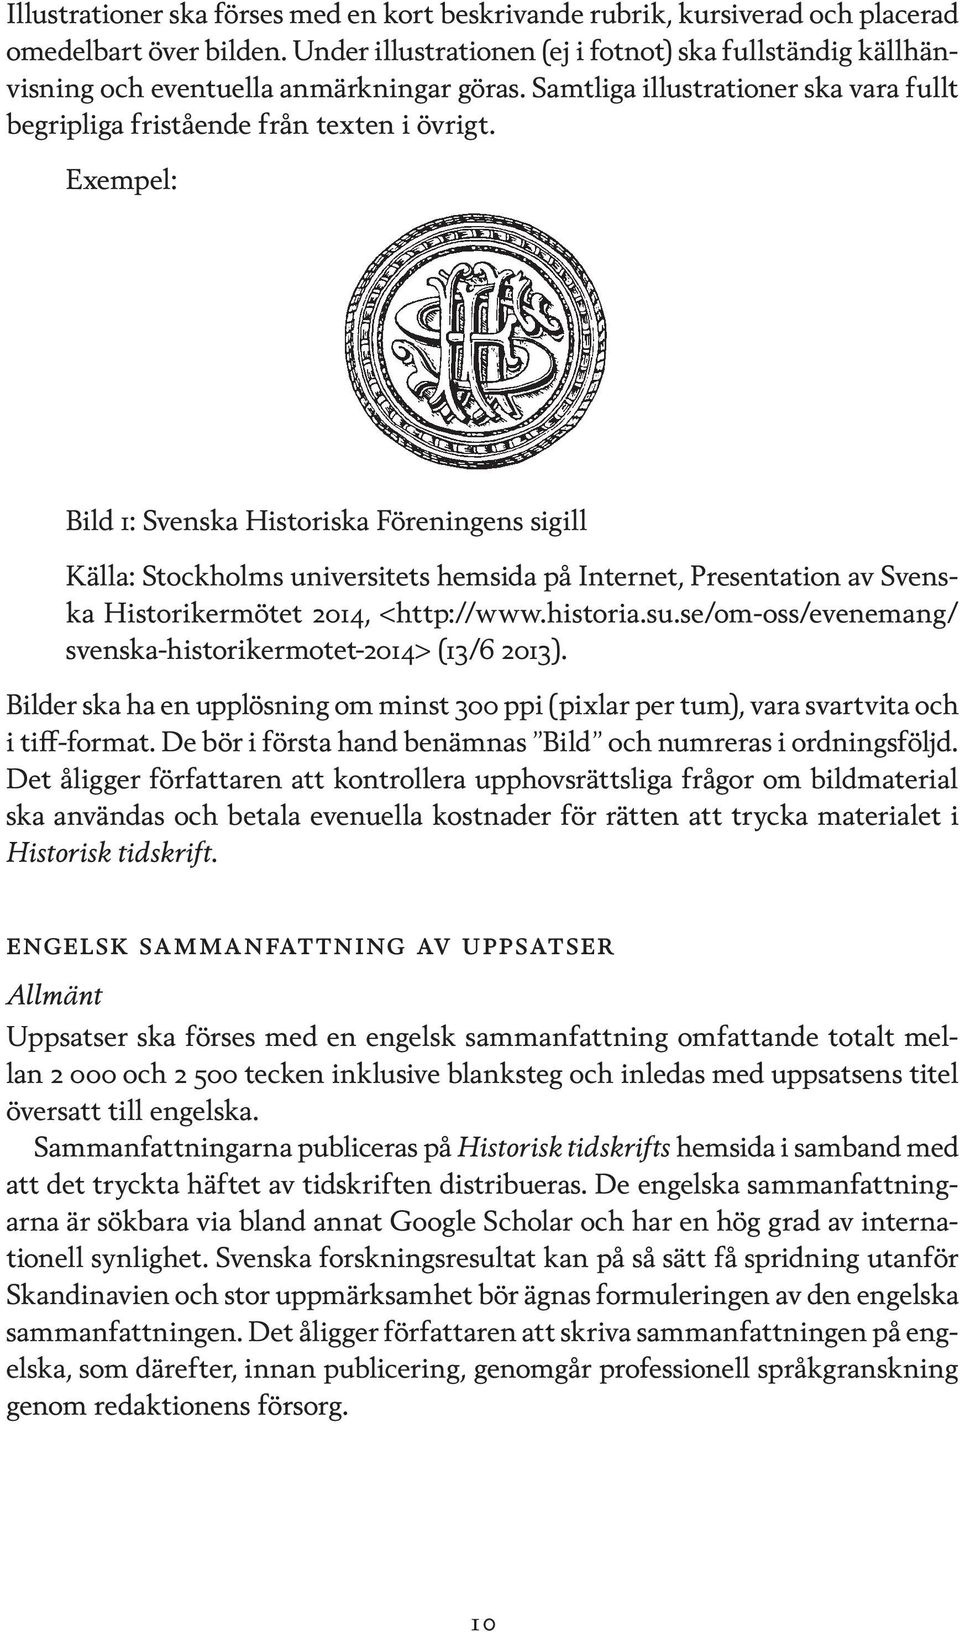 Bild 1: Svenska Historiska Föreningens sigill Källa: Stockholms universitets hemsida på Internet, Presentation av Svenska Historikermötet 2014, <http://www.historia.su.